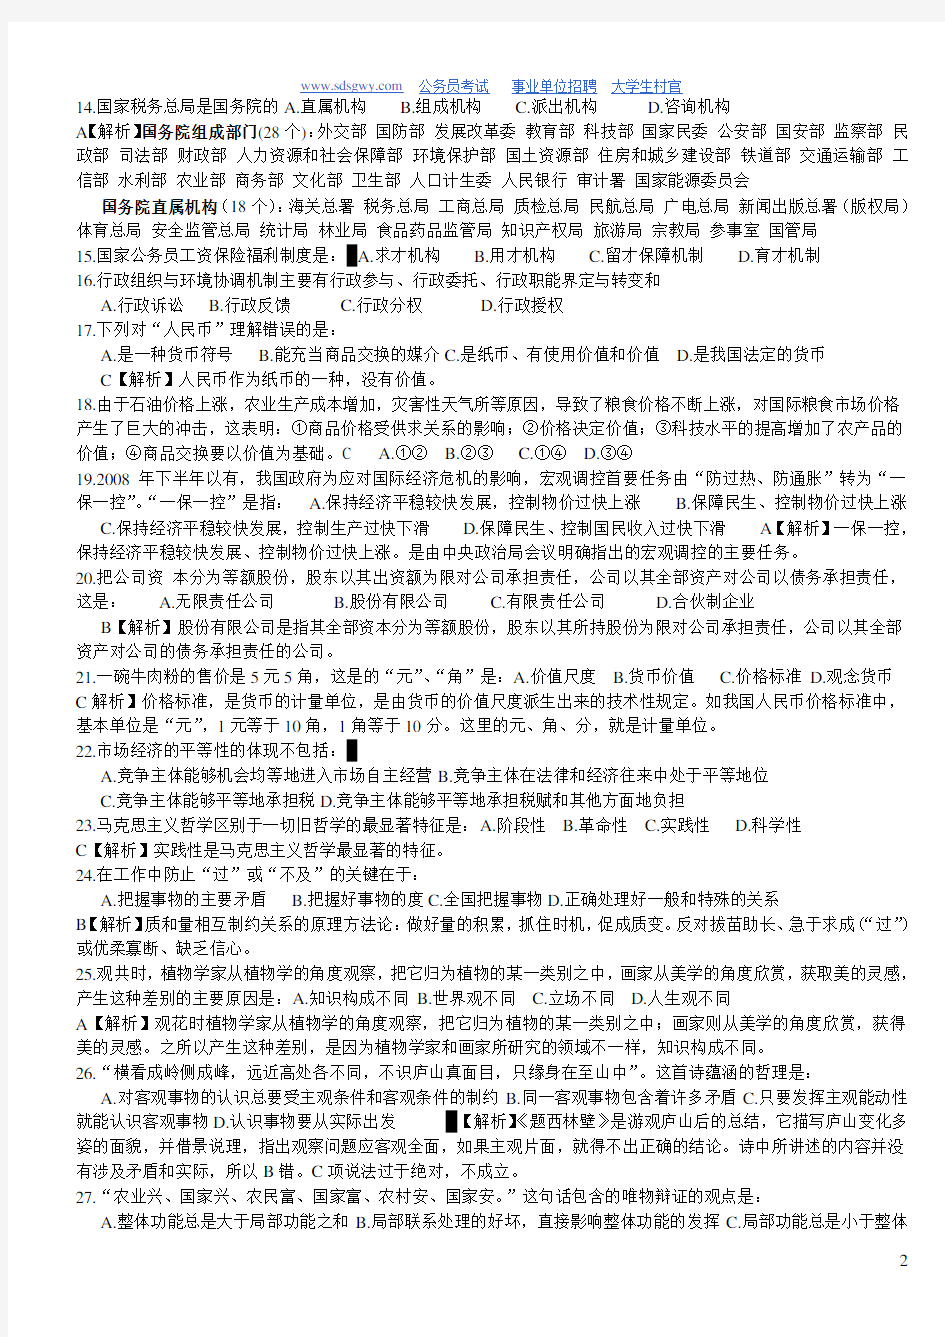 贵州省事业单位考试真题《公共基础知识》及答案解析(已编辑,可直接打印哦)